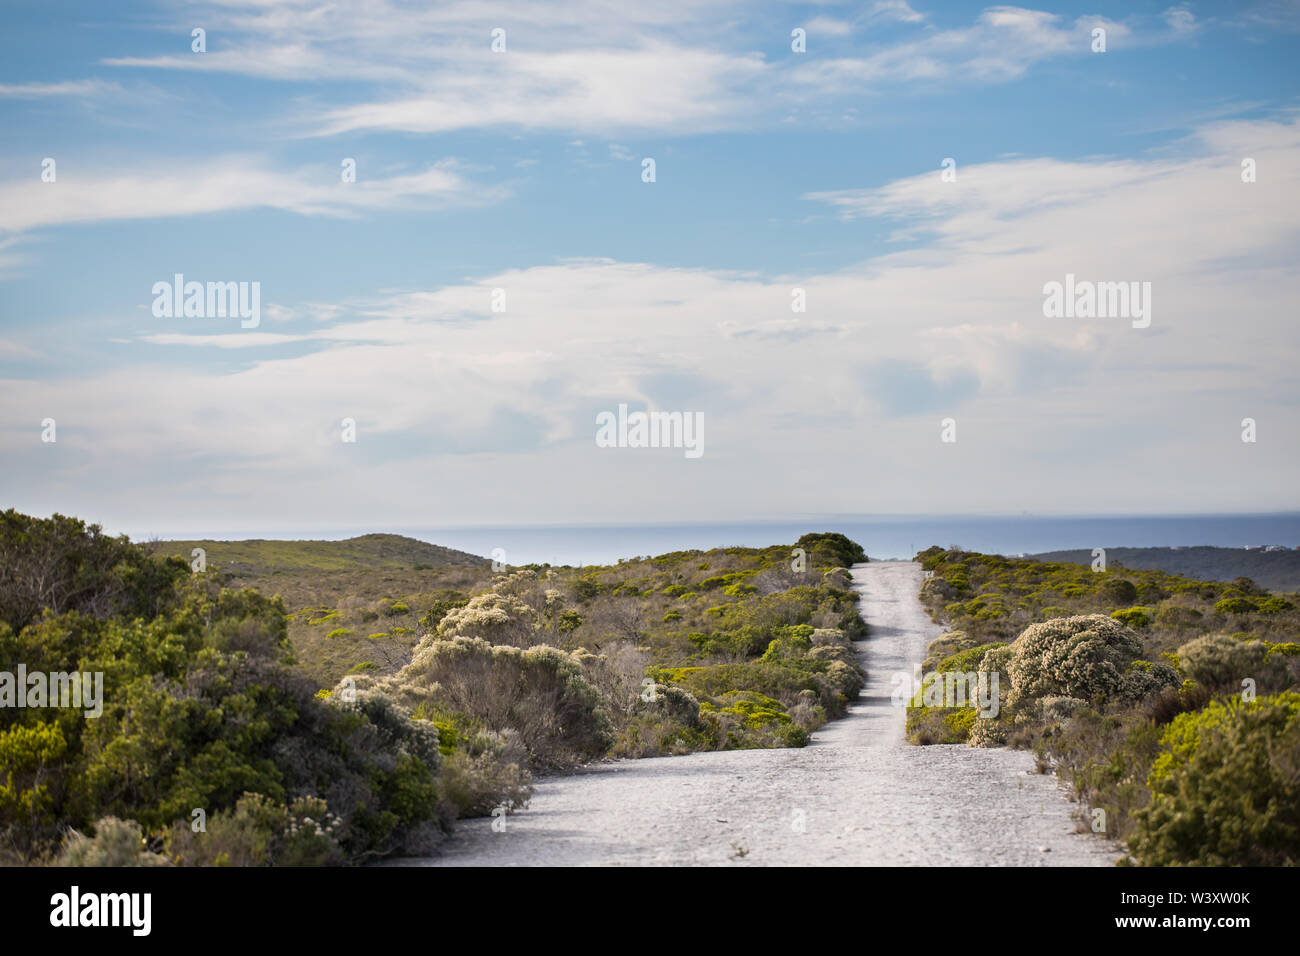 El Parque Nacional Agulhas protege hábitat fynbos y ofrece rutas de senderismo y playa cerca de Cape Agulhas, peinado, Western Cape, Sudáfrica. Foto de stock